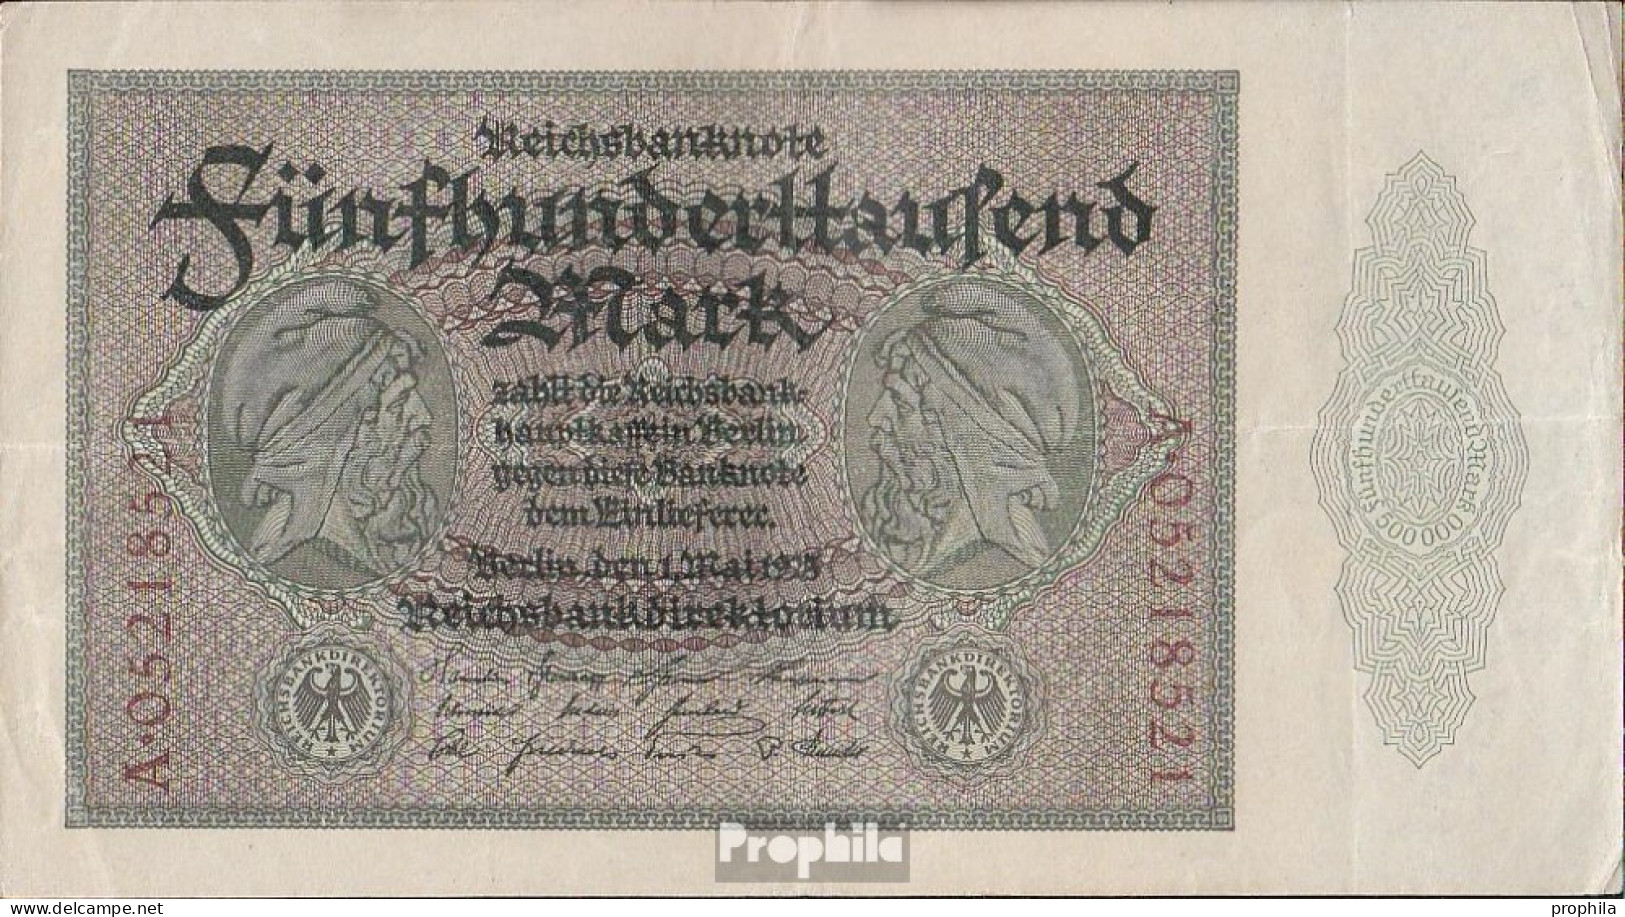 Deutsches Reich Rosenbg: 87b, Reichsdruckerei 8stellige Kontrollnummer Gebraucht (III) 1923 500.000 Mark - 500000 Mark